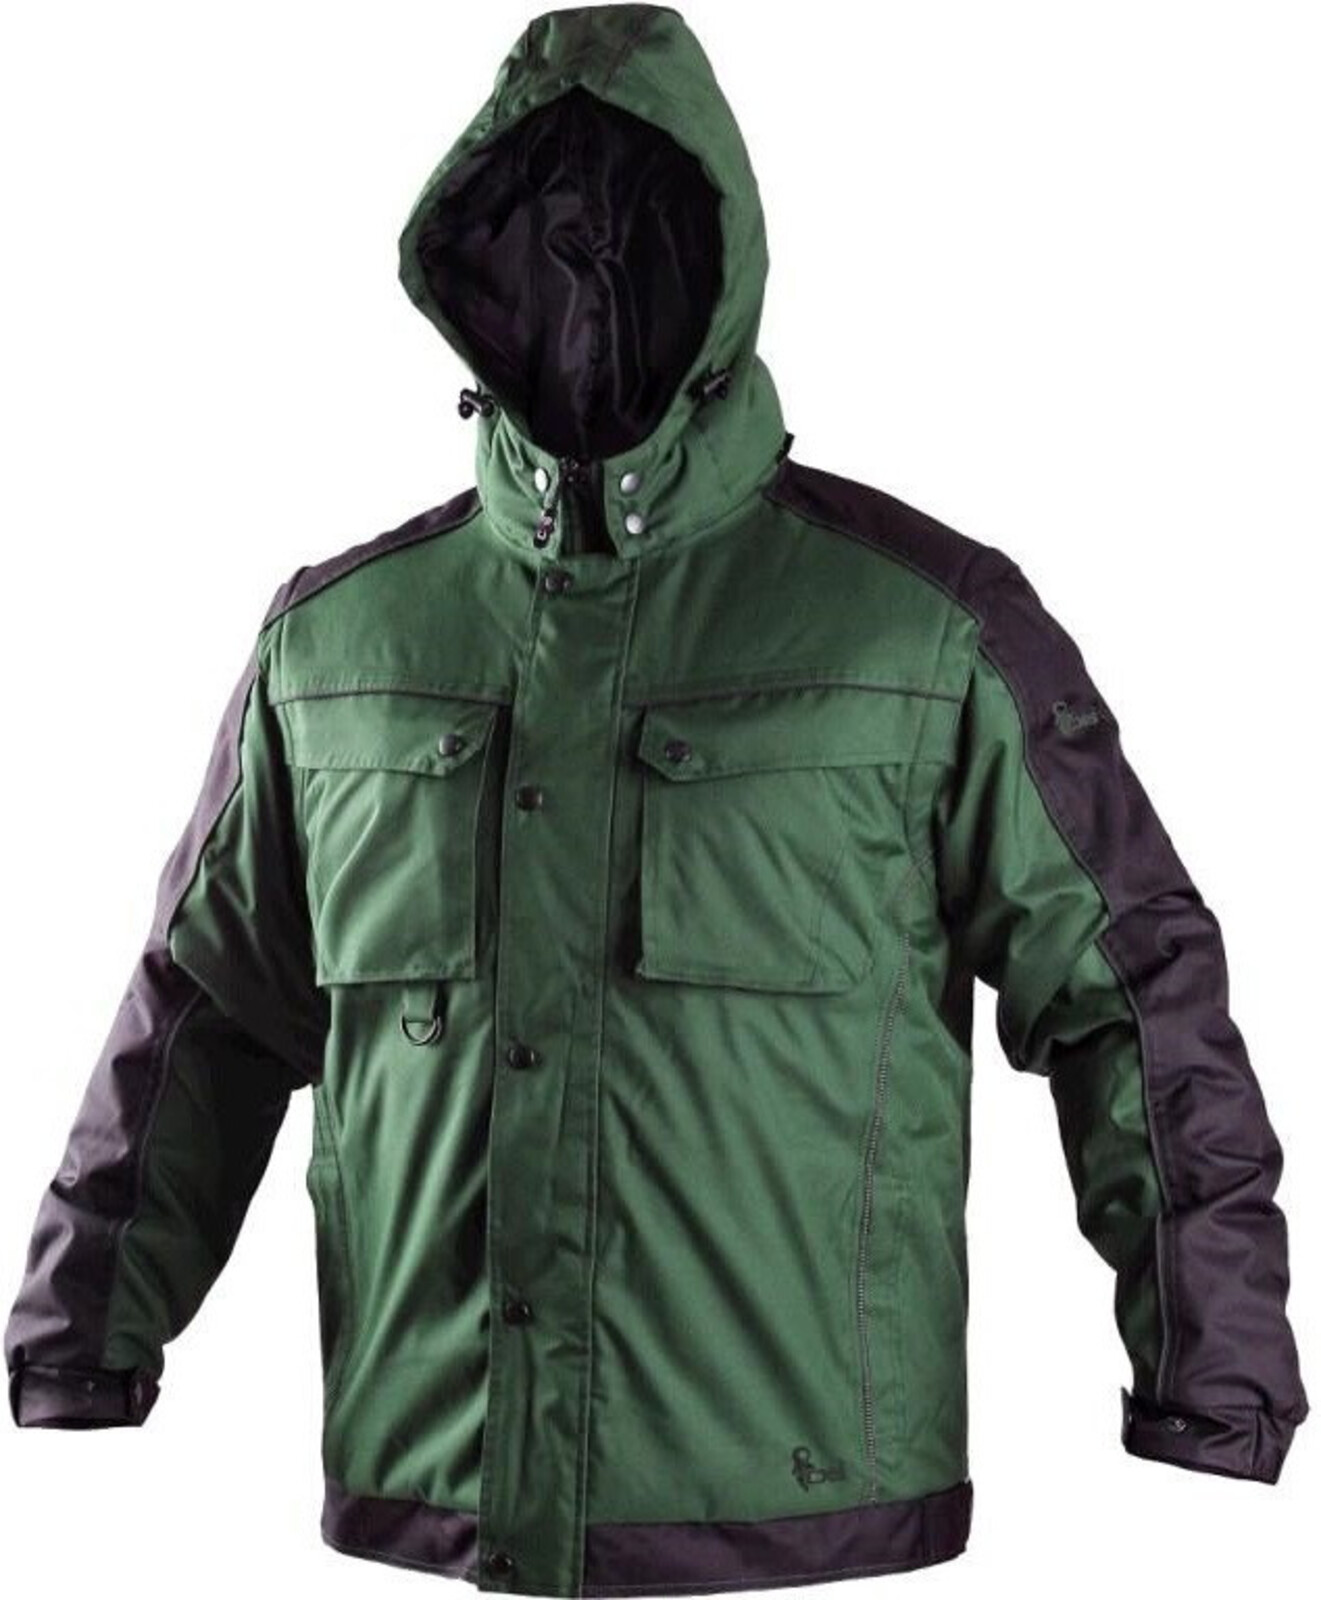 Pánska zimná bunda CXS Irvine 2v1 - veľkosť: XXL, farba: zelená/čierna